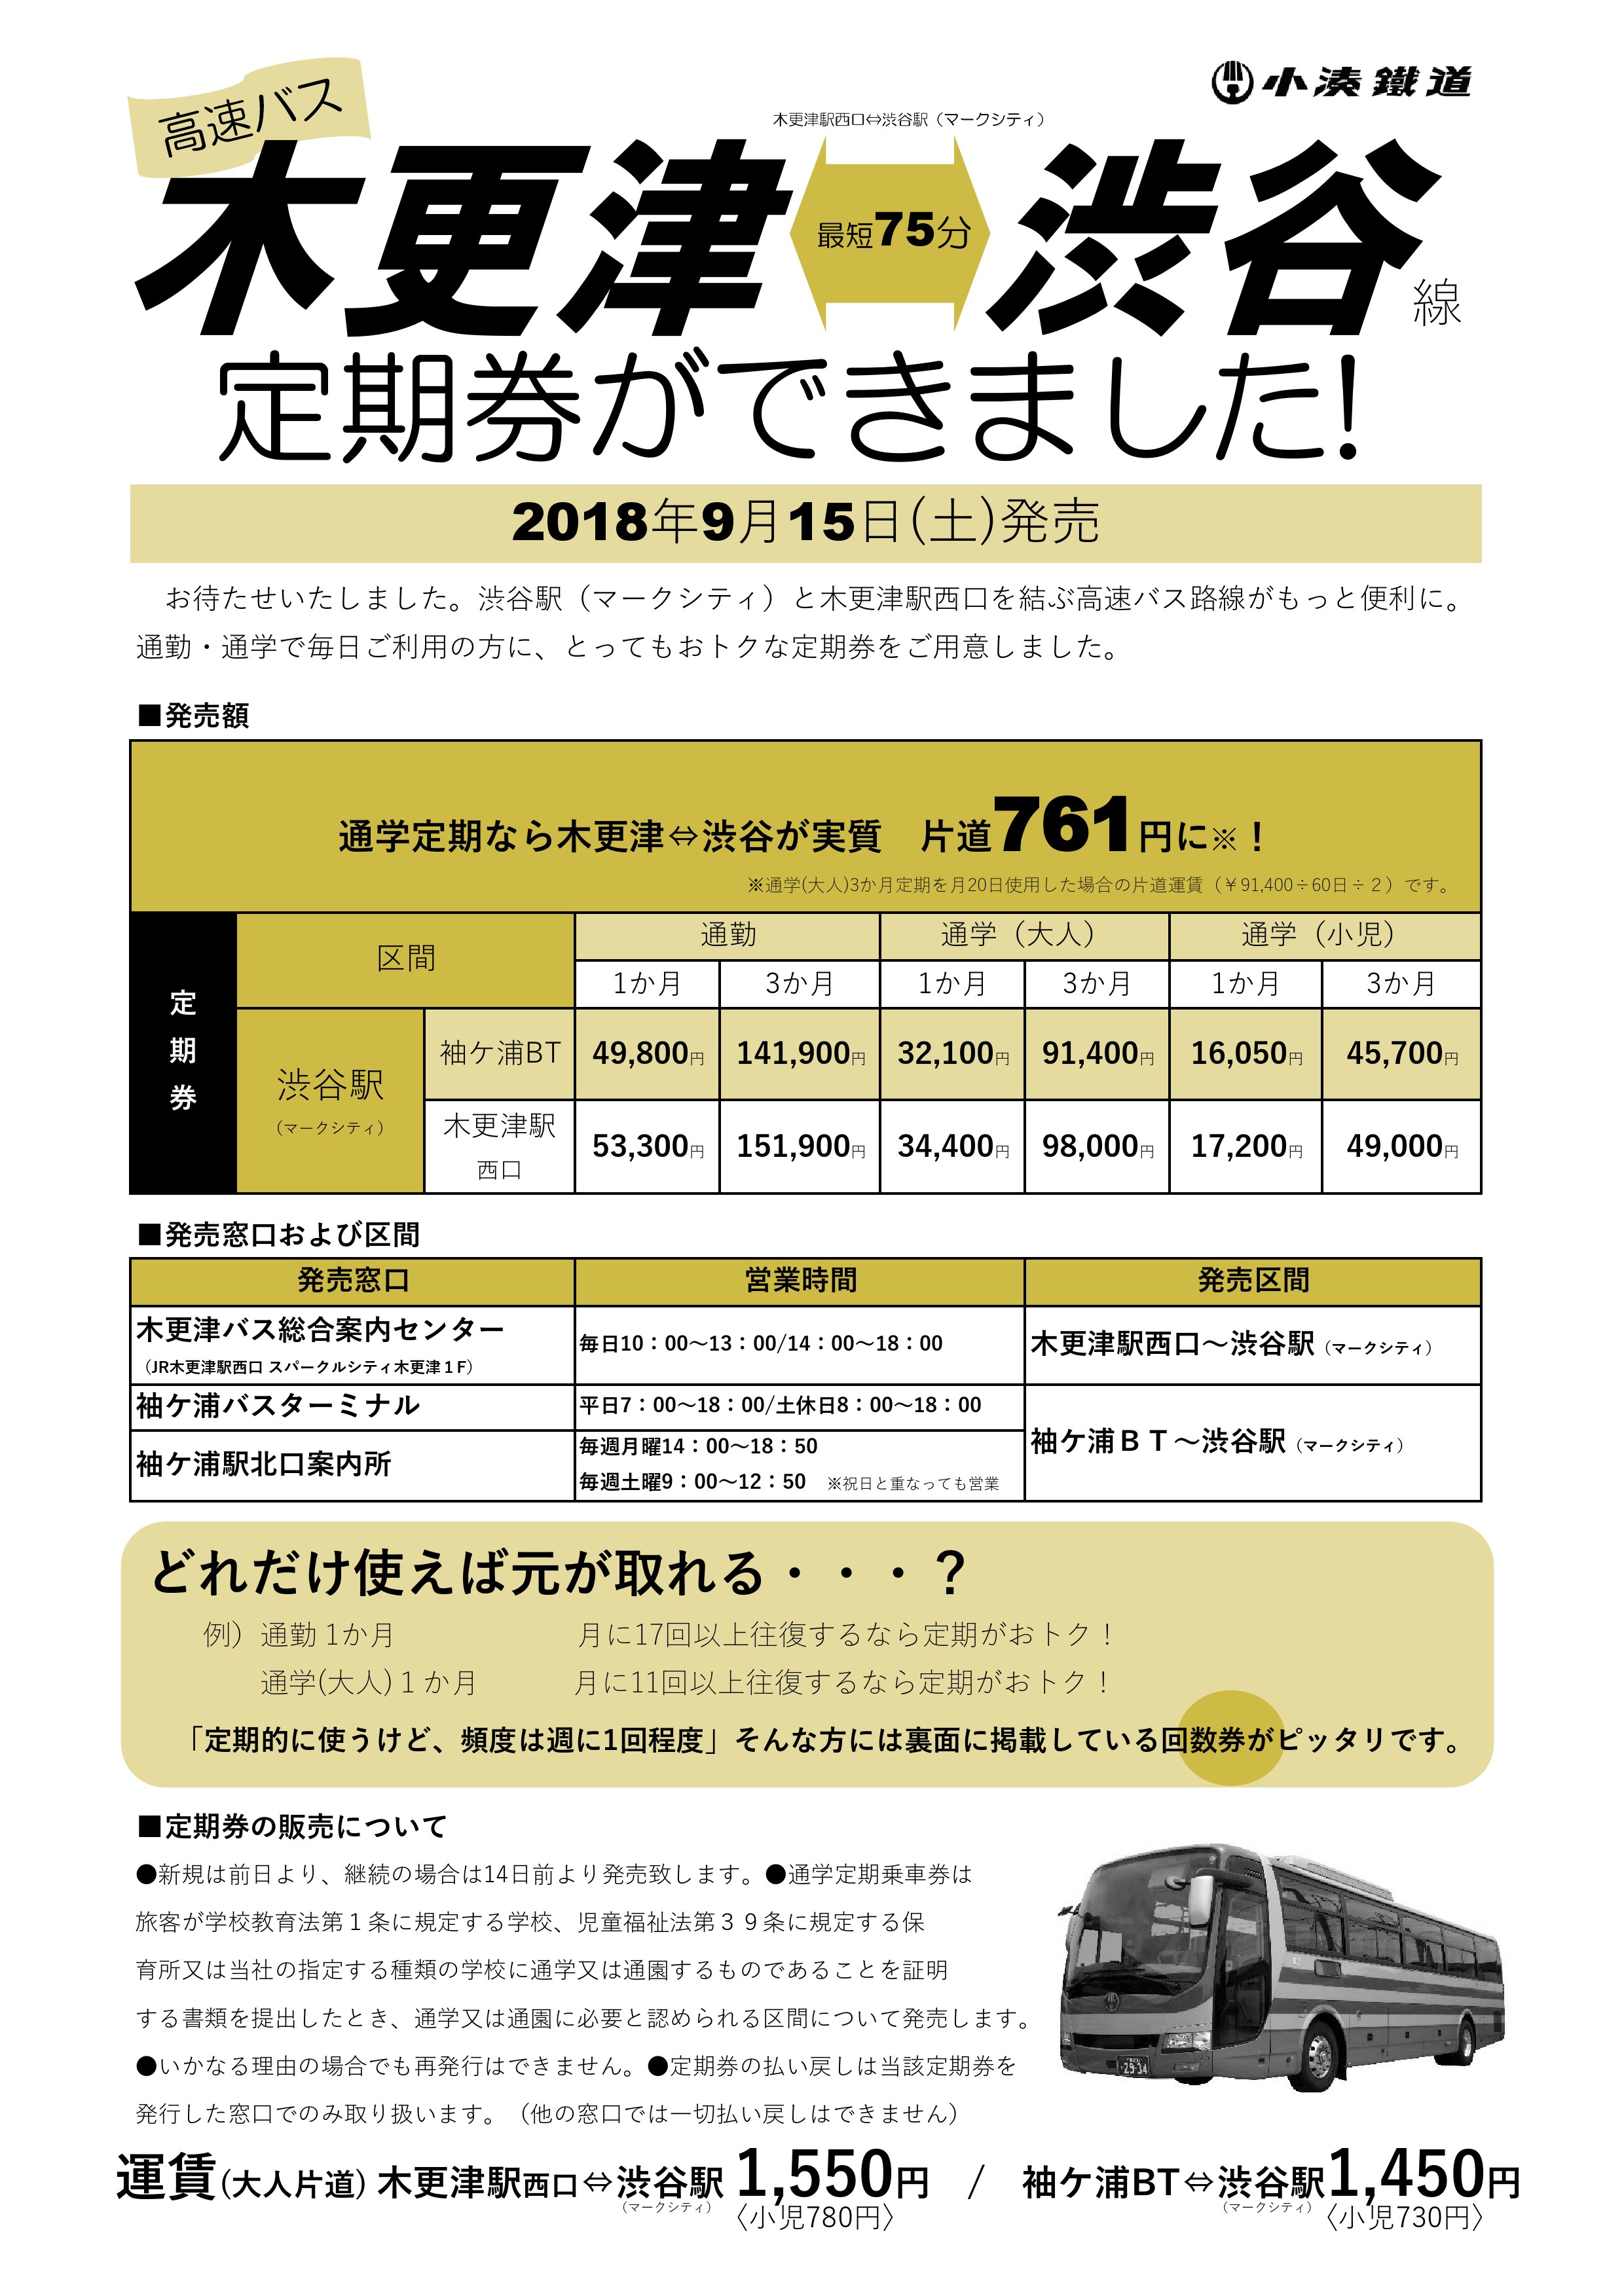 高速バス 木更津 渋谷線 の定期券発売決定 小湊鐵道株式会社のプレスリリース